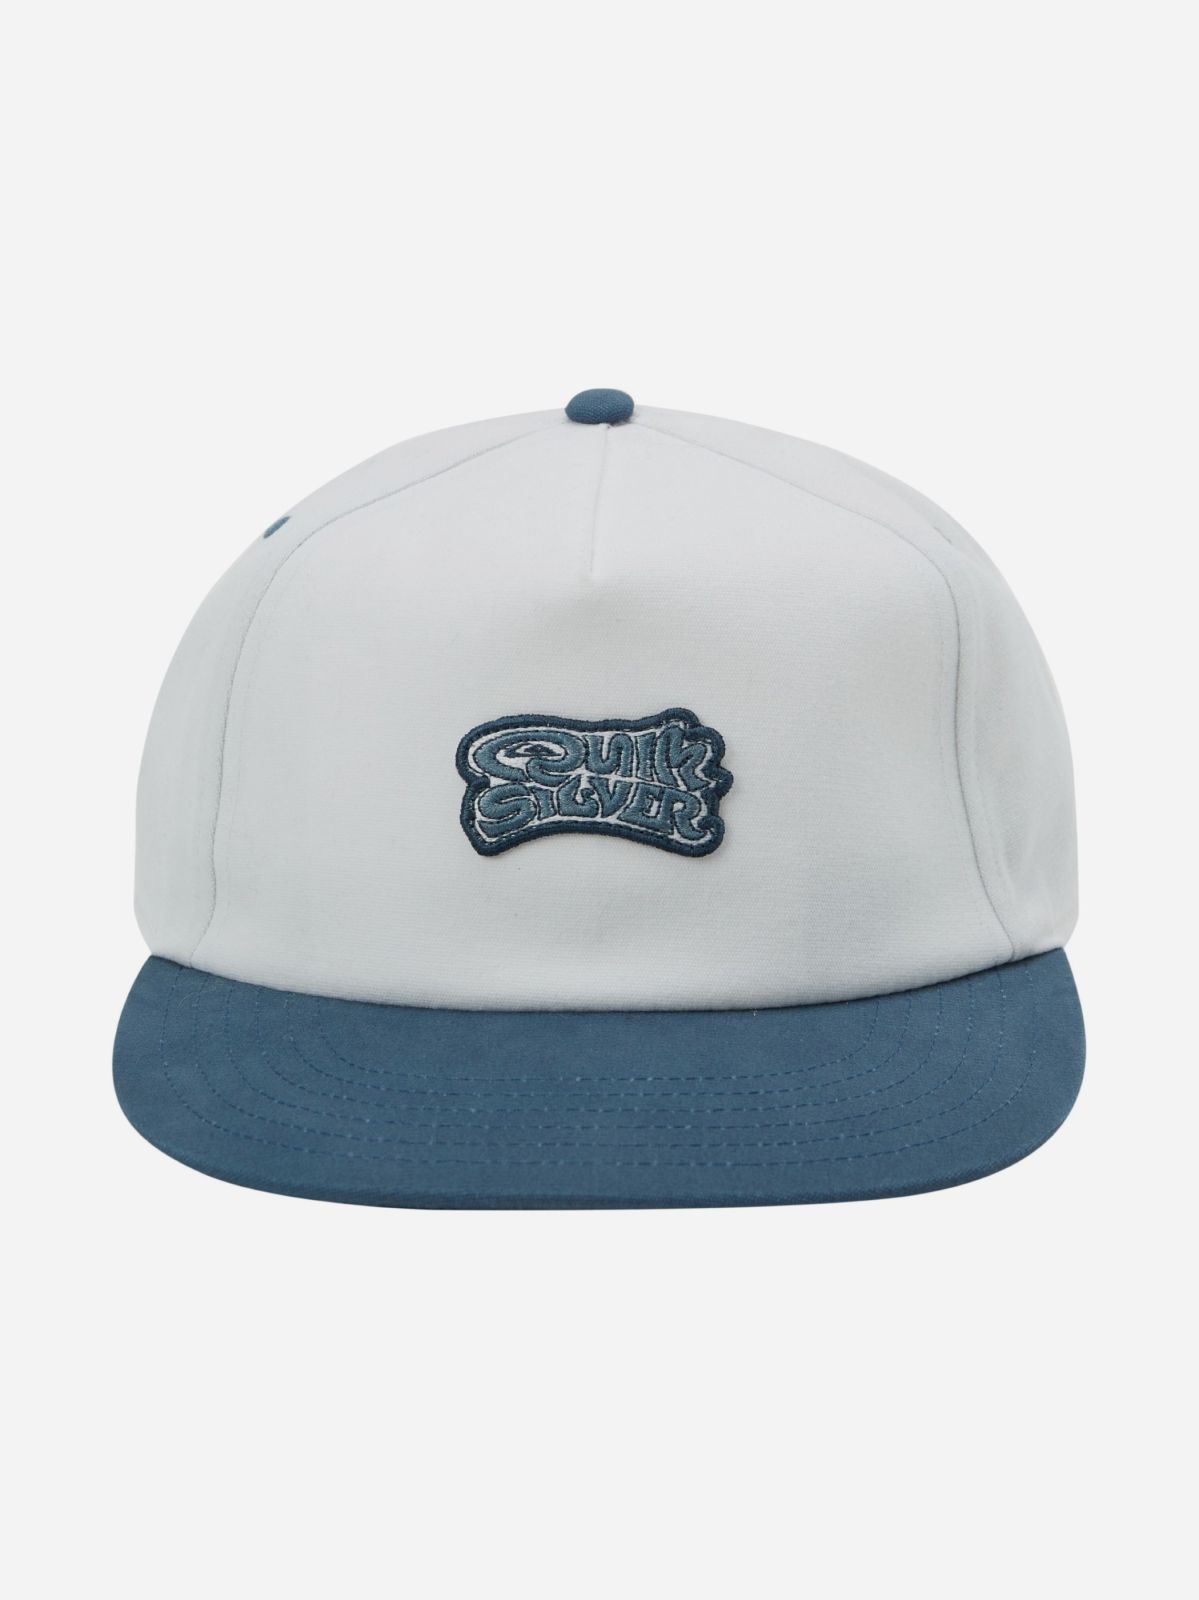  כובע מצחייה עם לוגו רקום / גברים של ROXY